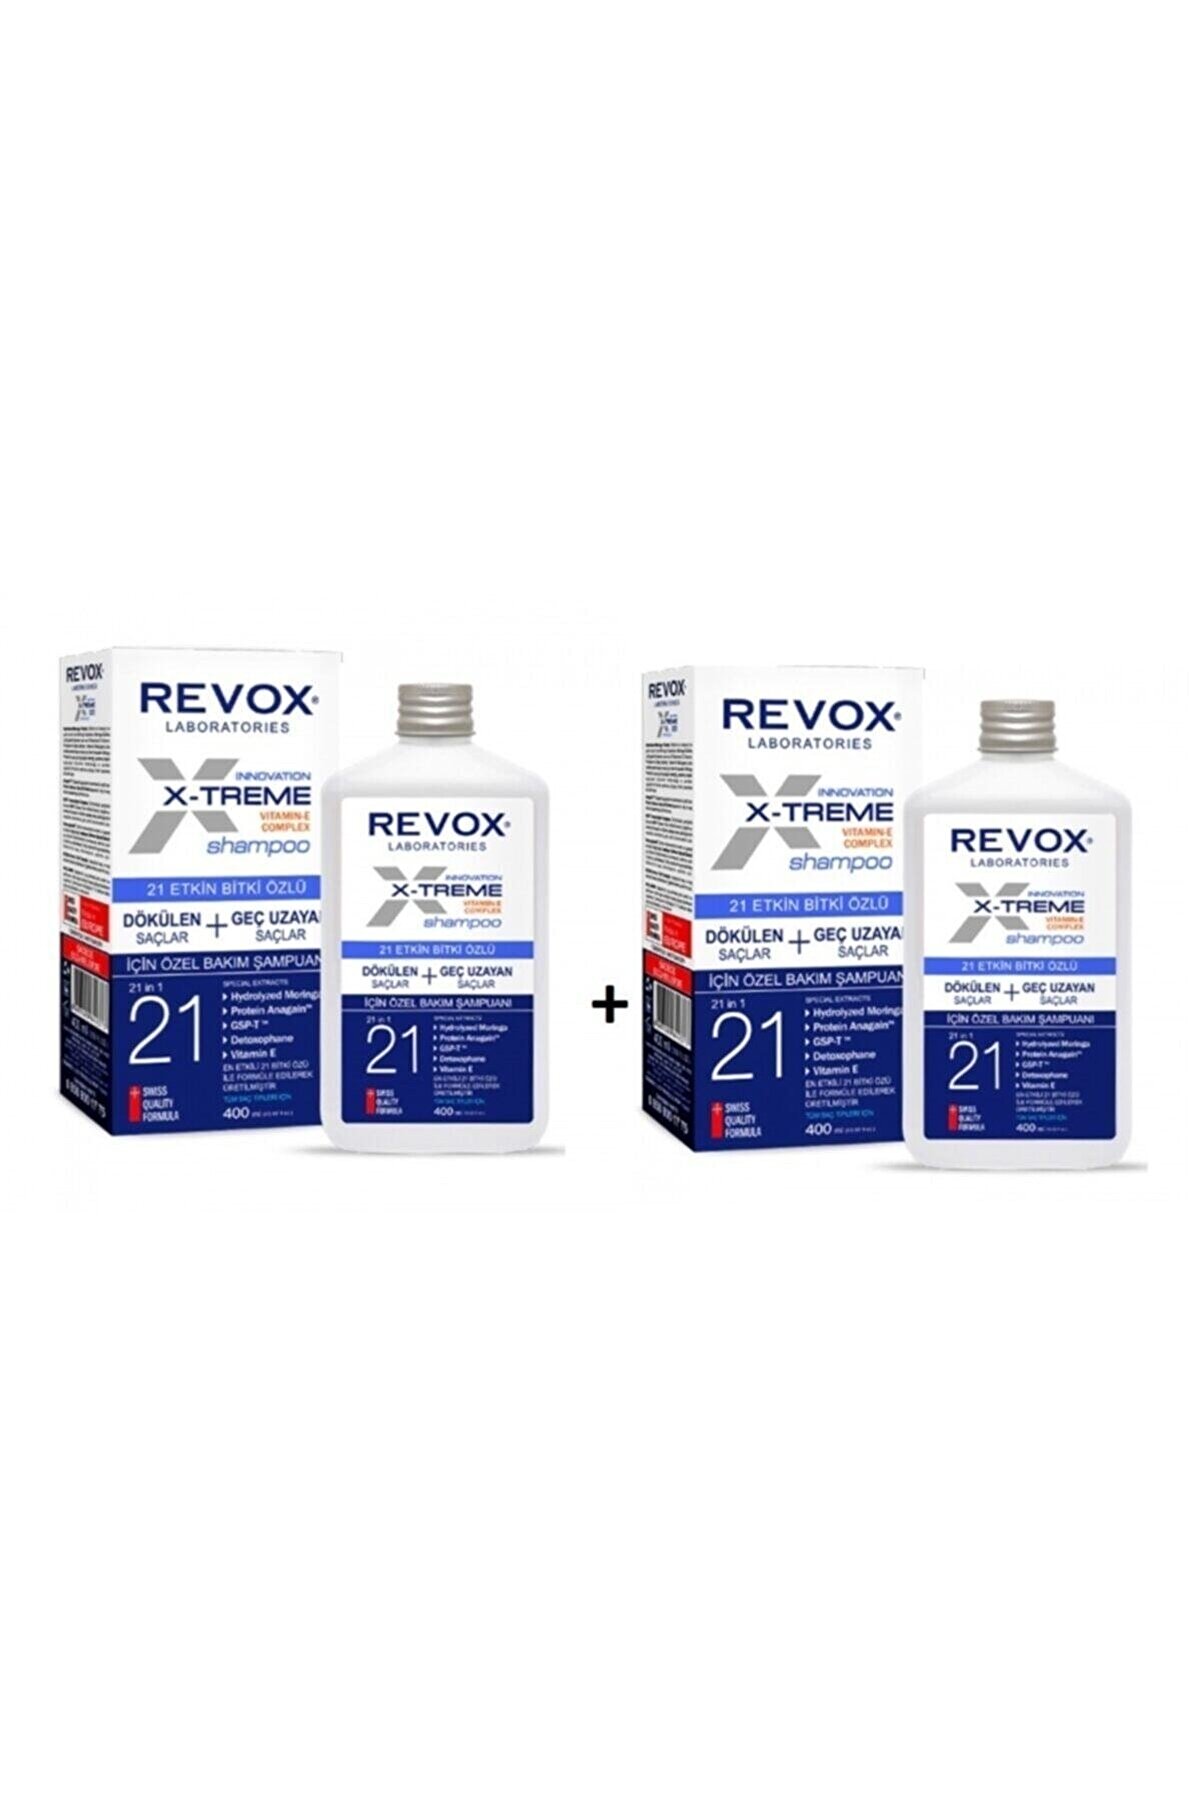 Revox X-treme Dökülen Geç Uzayan Saçlar Için Şampuan 2 Adet